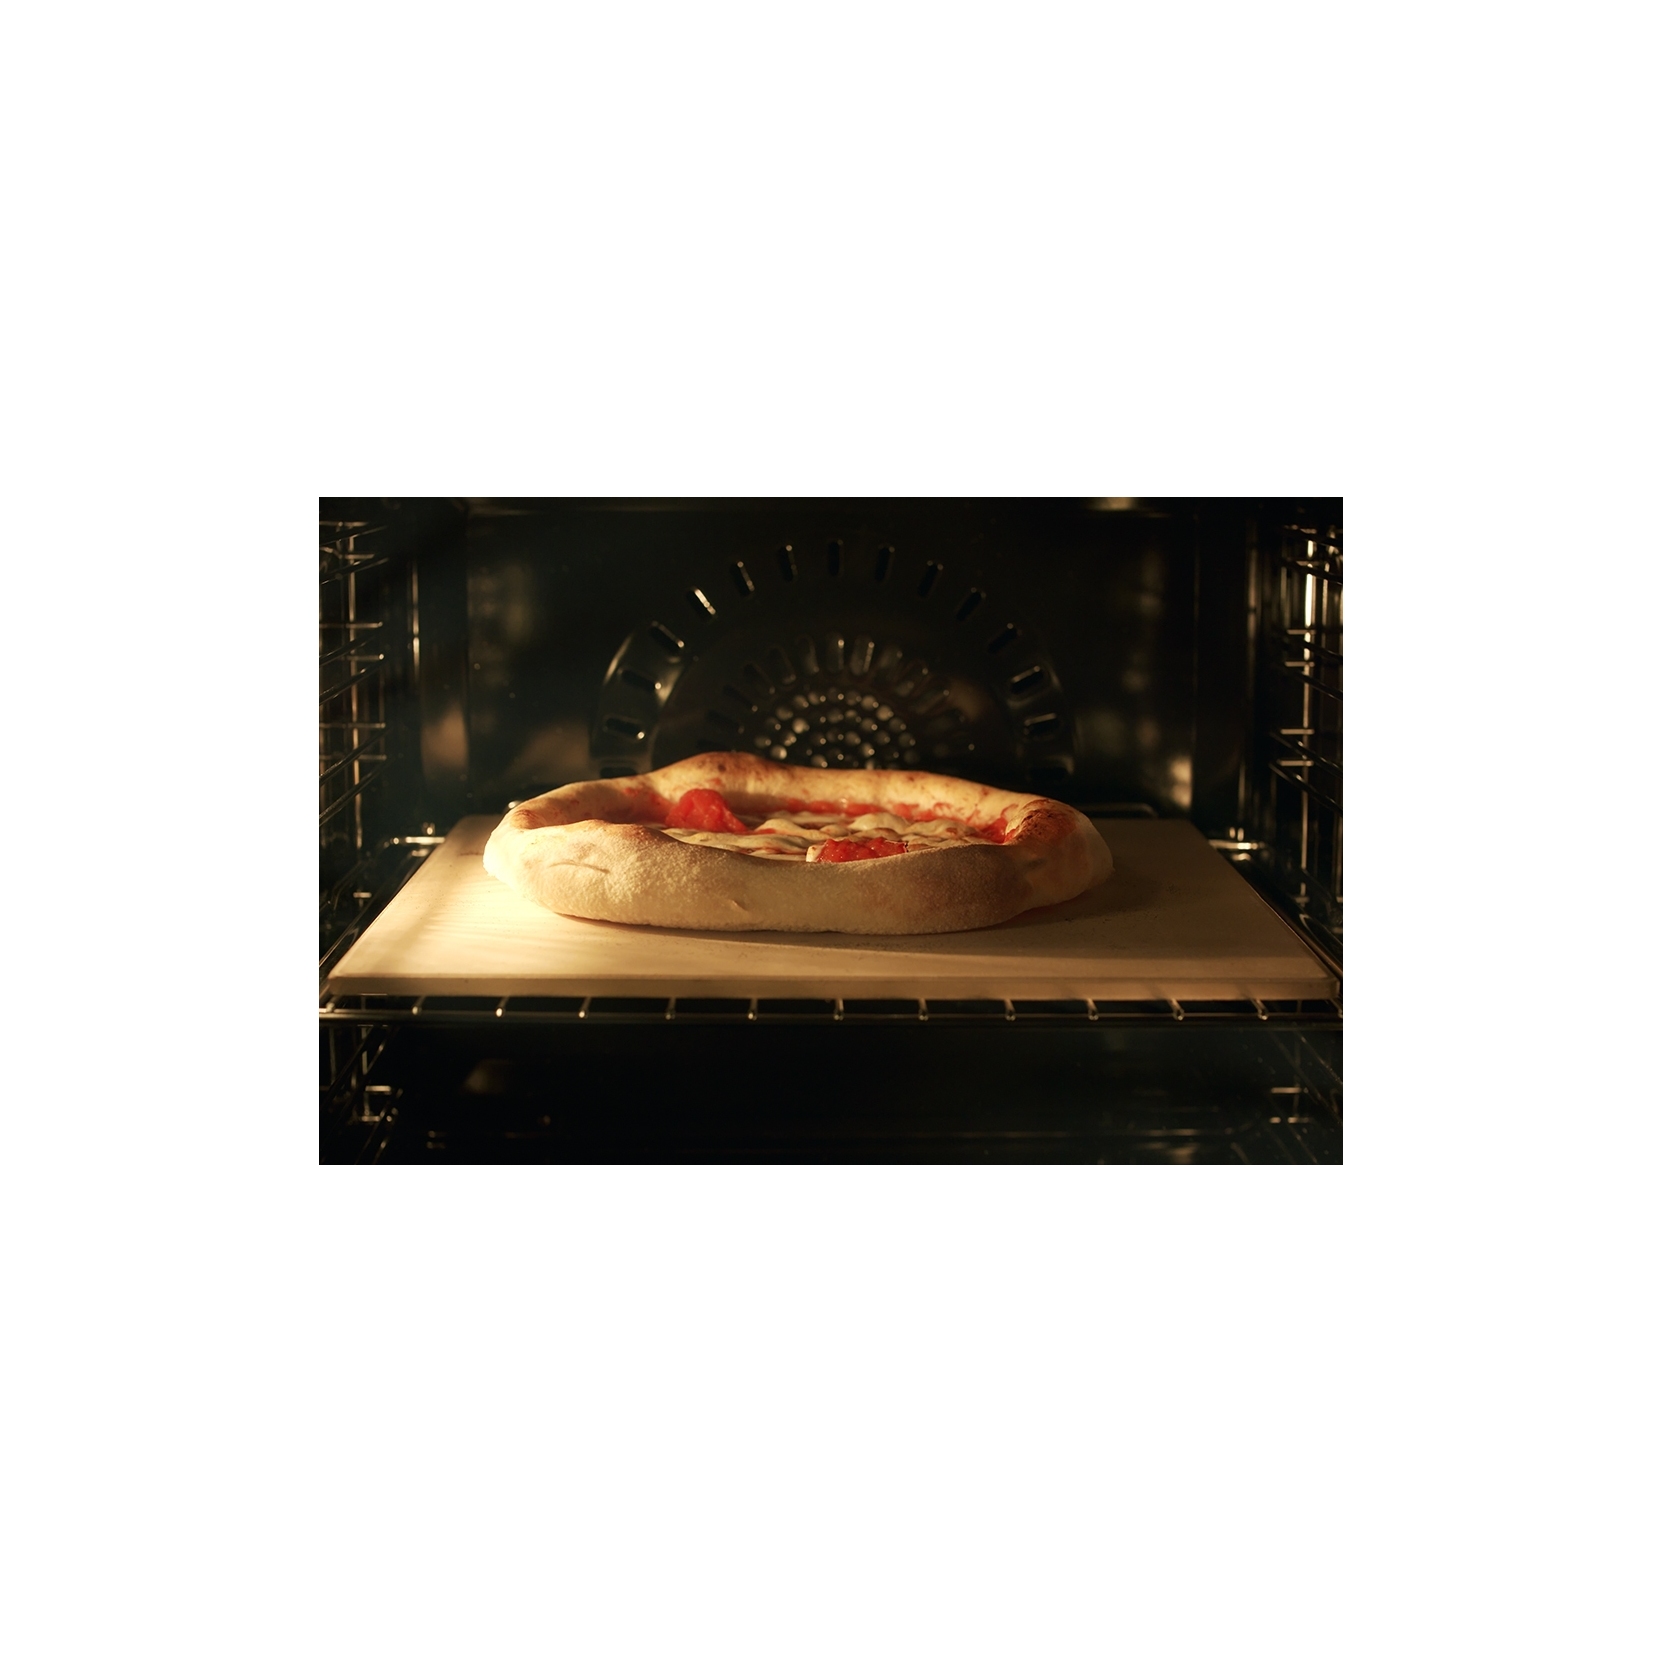 DE LONGHI PIZZA STONE Pietra refrattaria per pizza - Romano Incasso